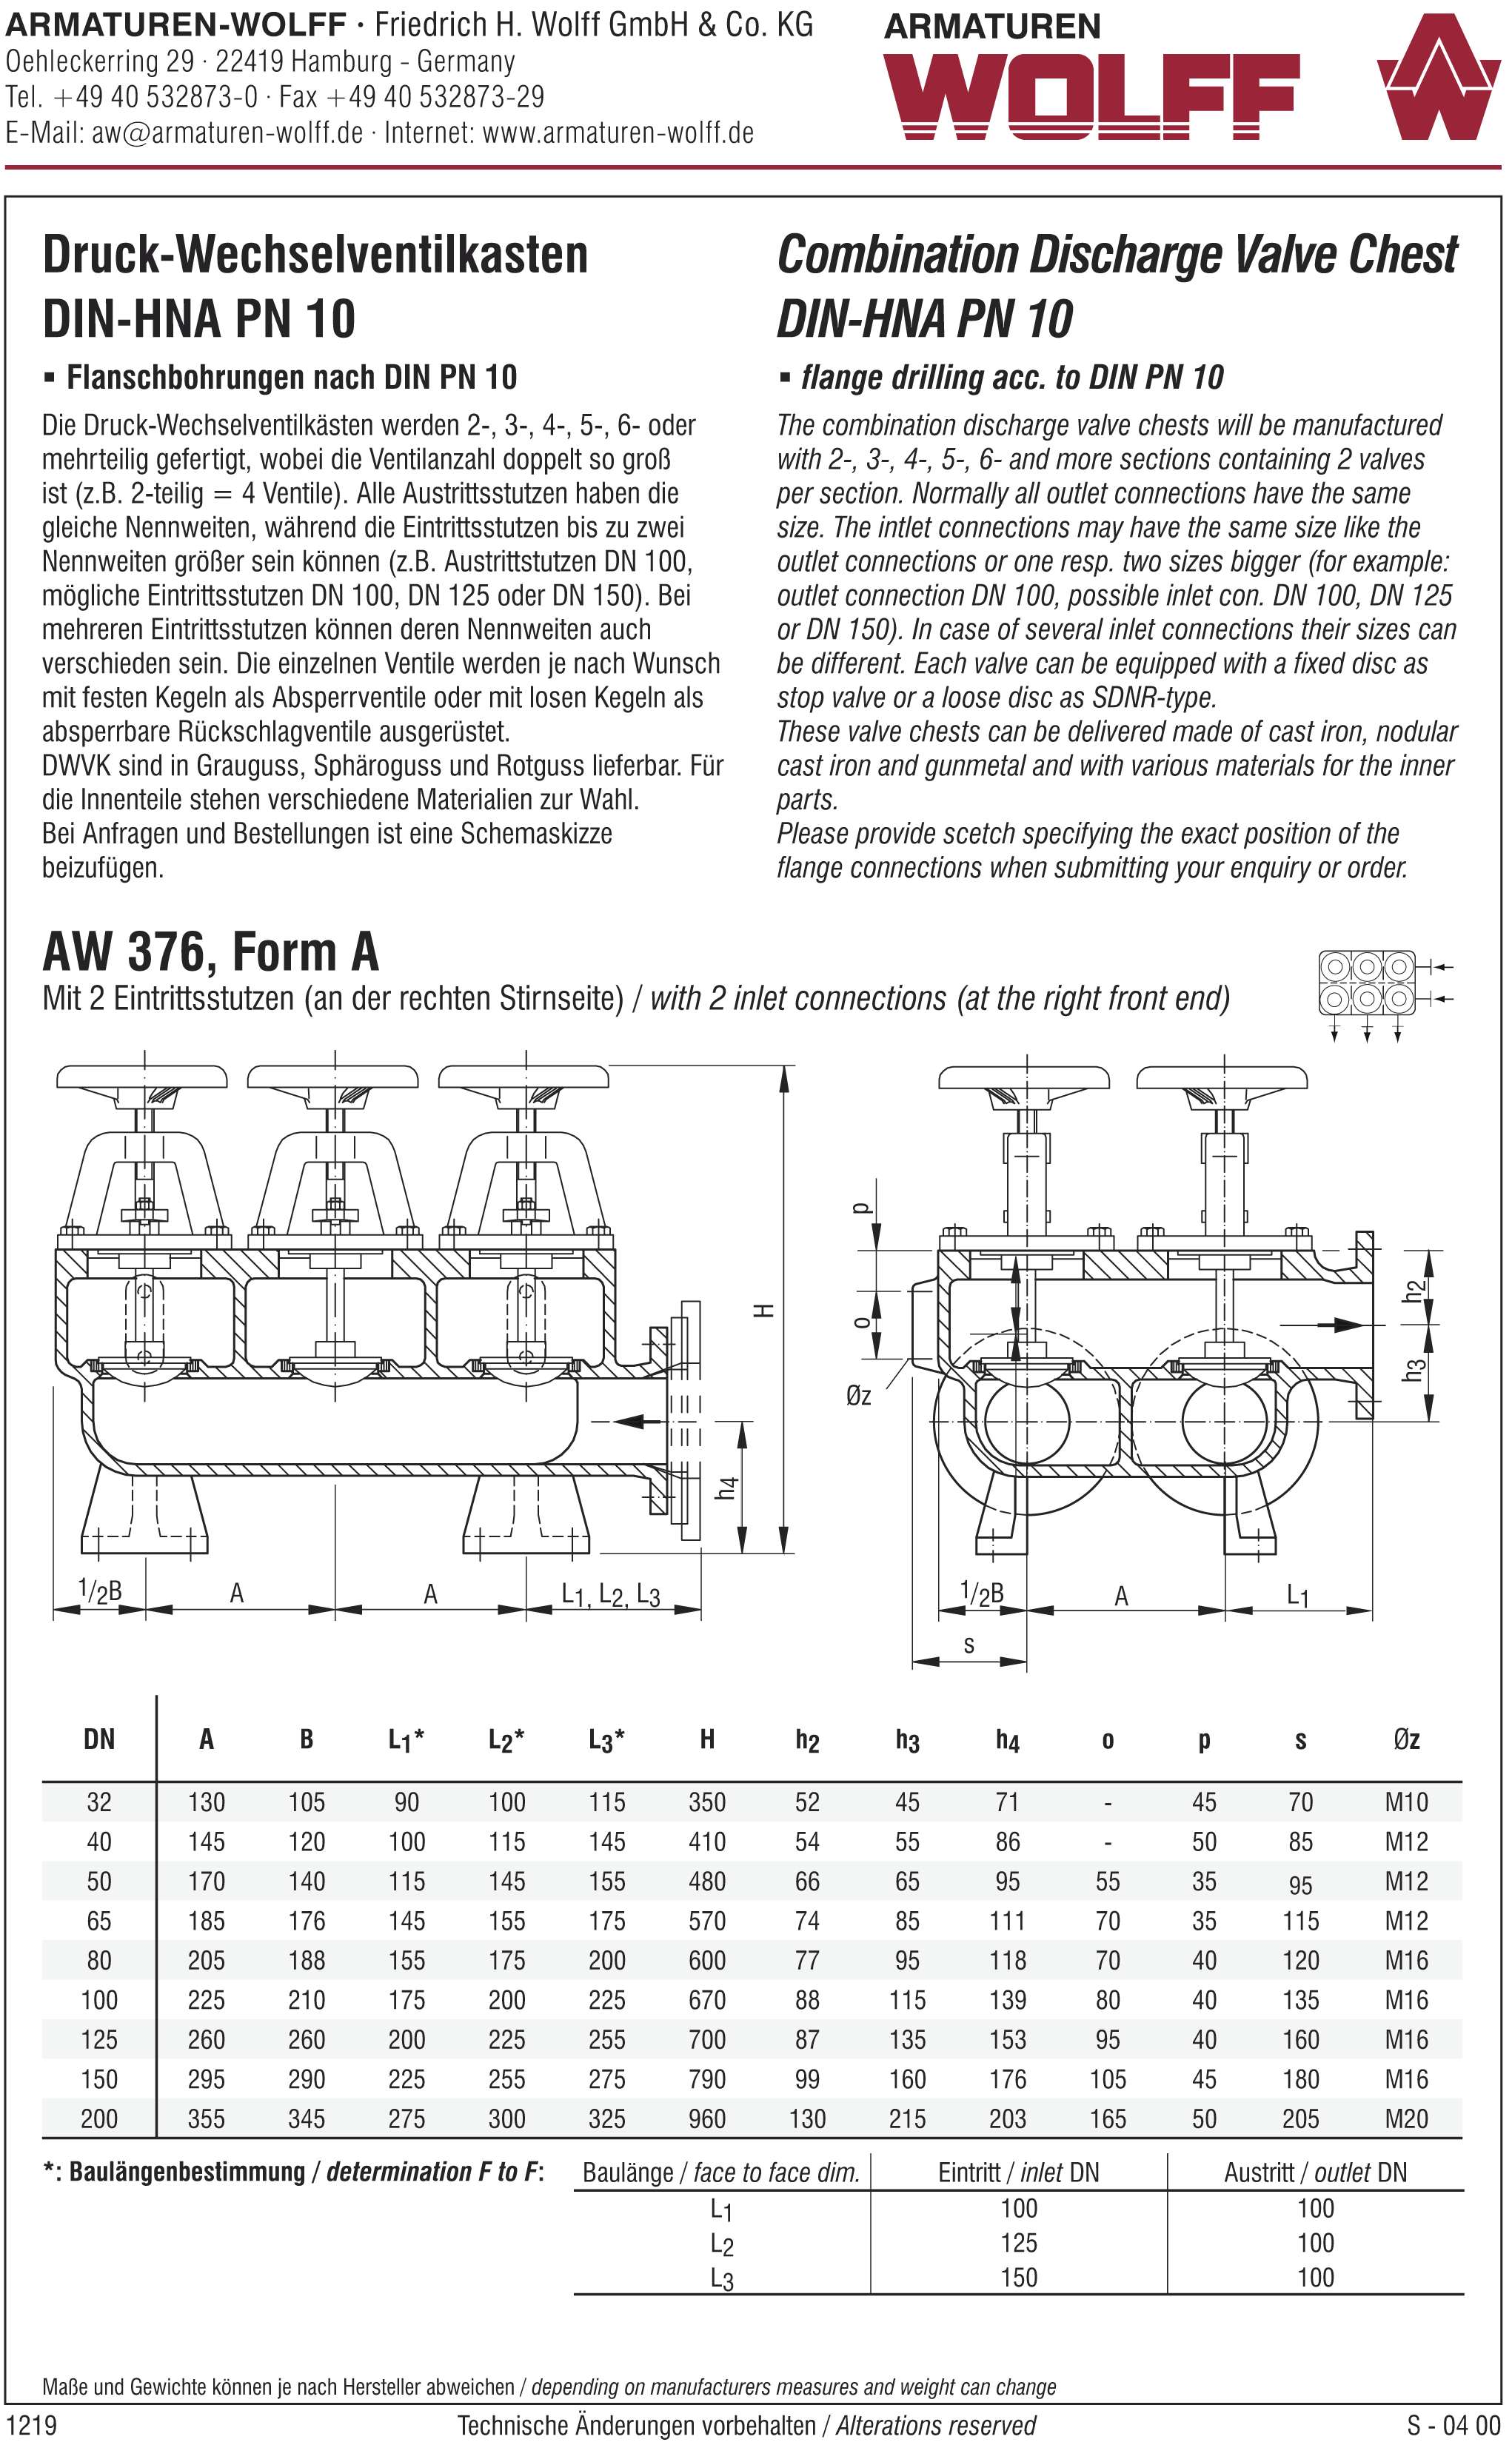 AW 376 Druck-Wechselventilkasten, Form A bis E